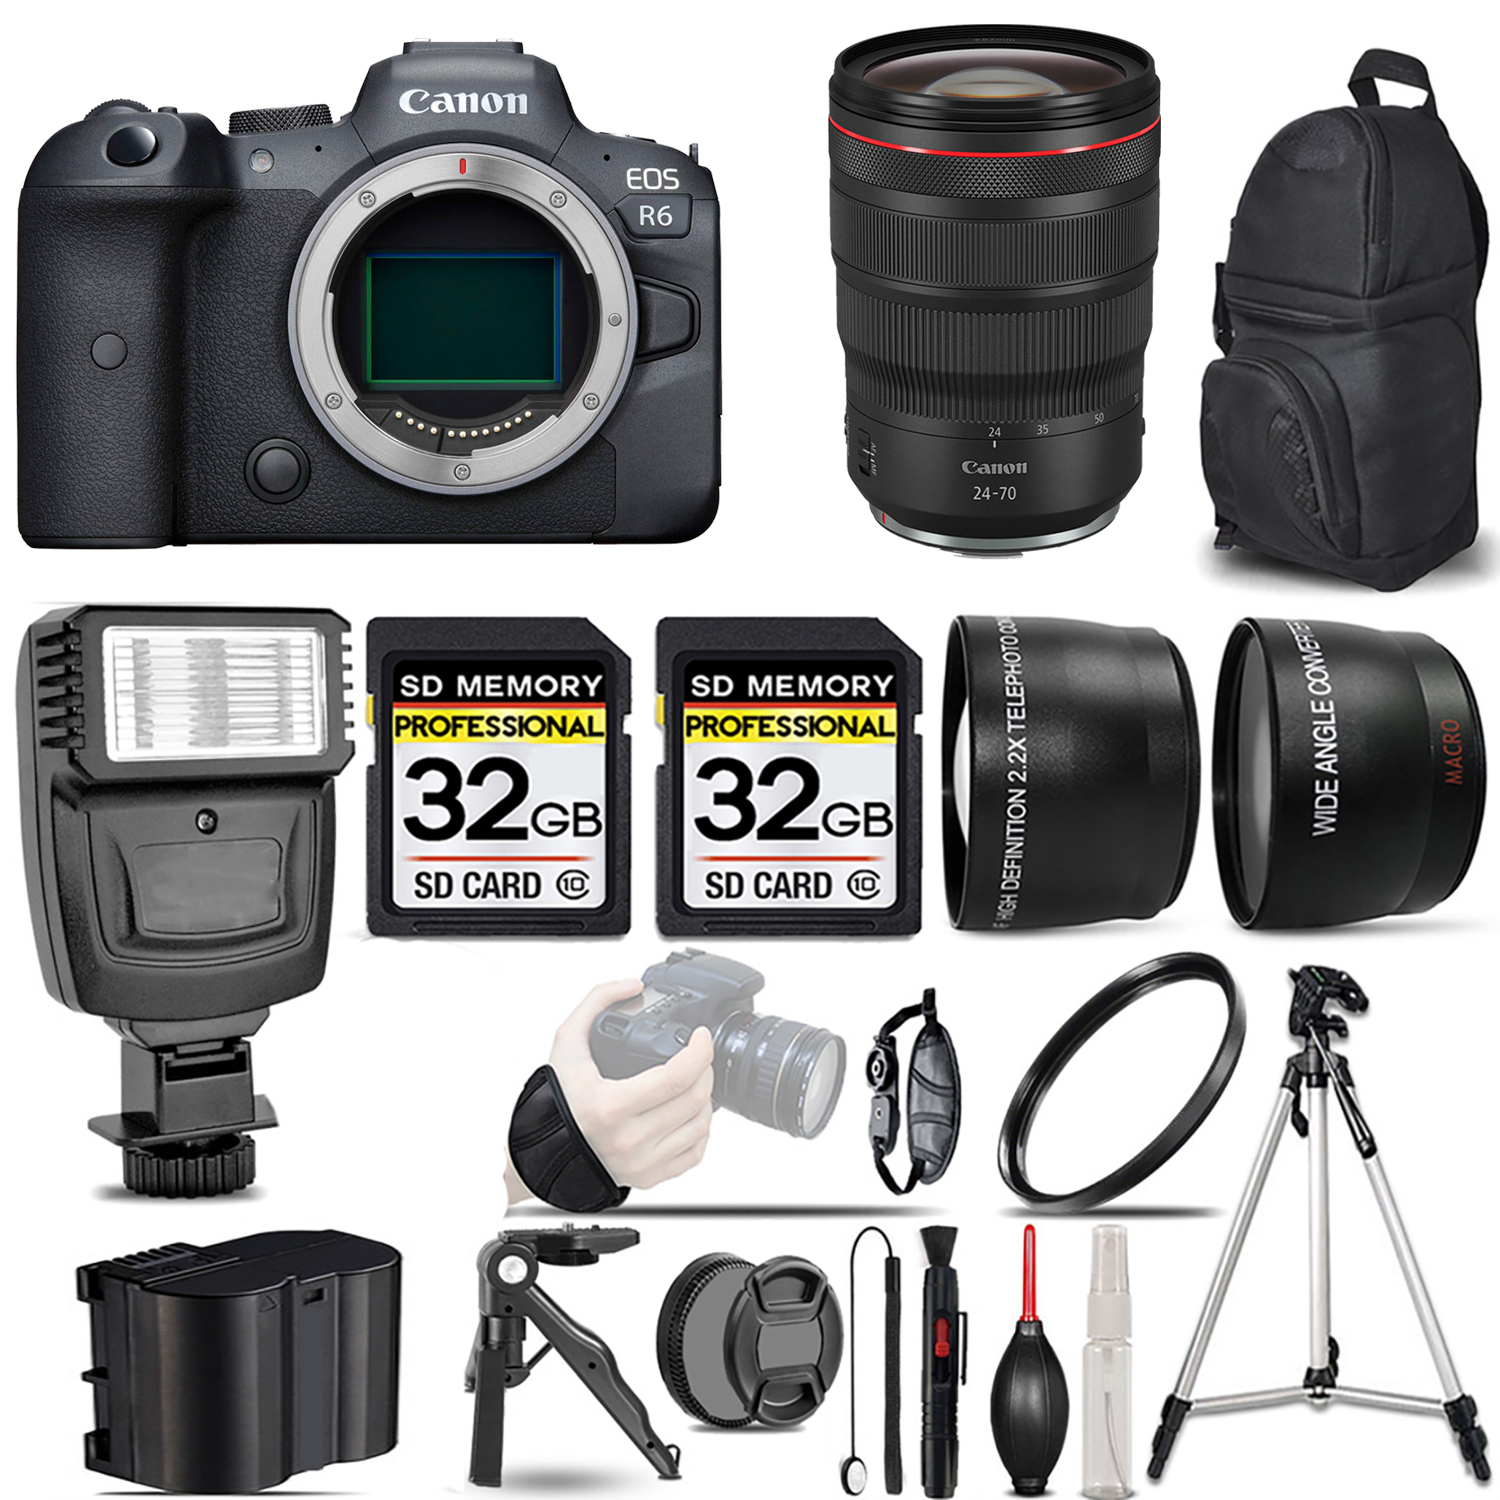 EOS R6 Mirrorless Camera + 24-70mm f/2.8 L IS USM Lens + Flash + 64GB - Kit *FREE SHIPPING*